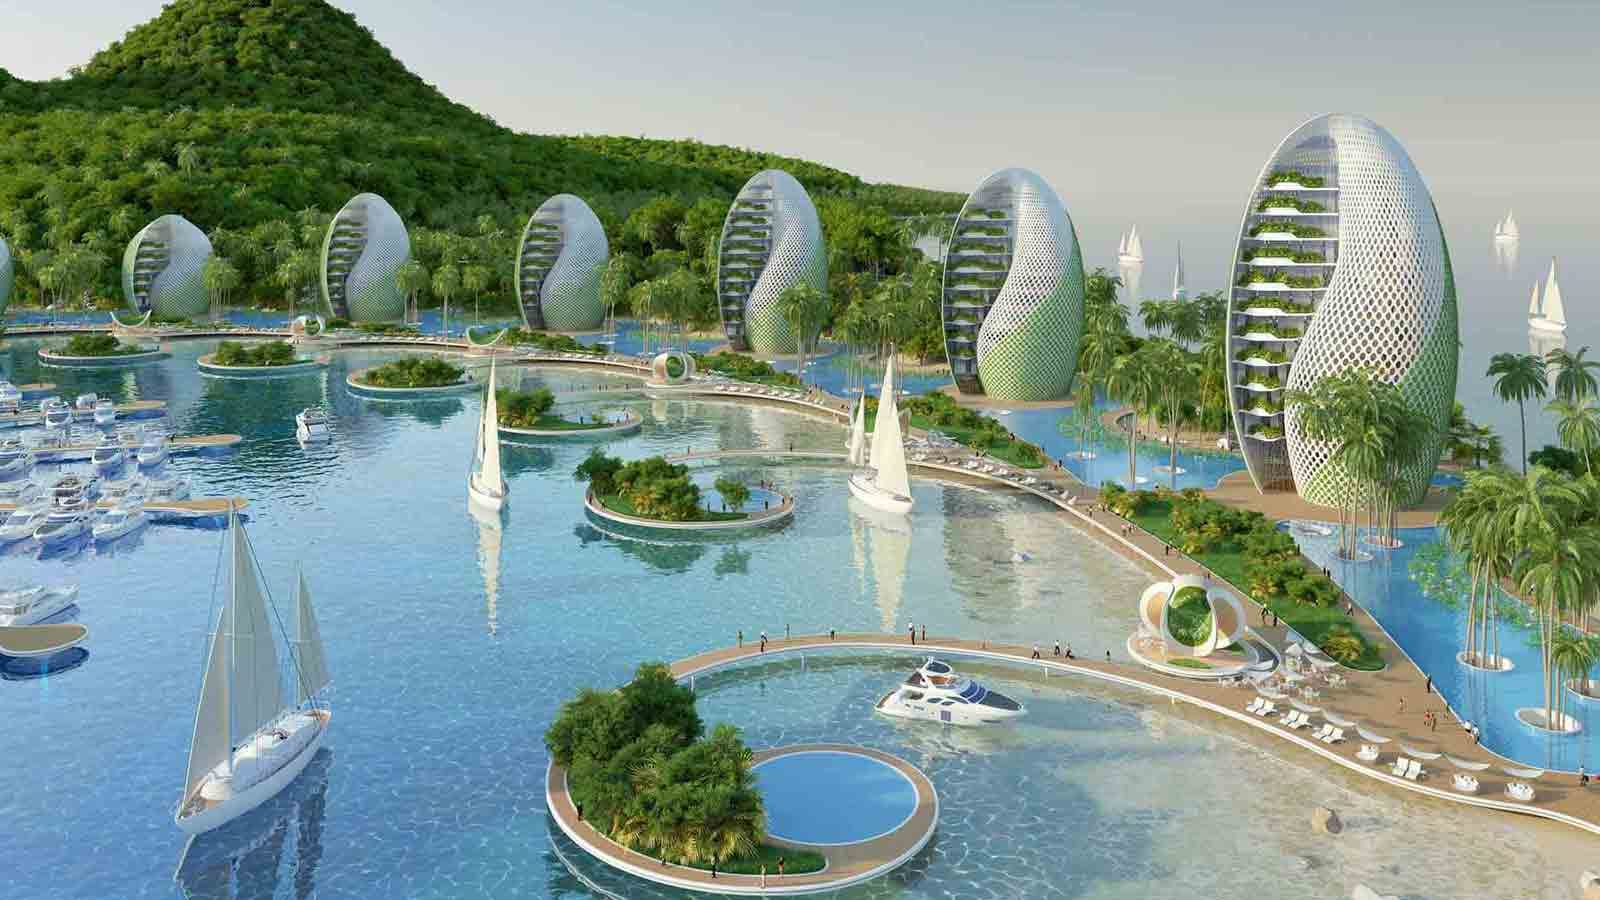 Nautilus Eco Resort – Không gian sinh thái bền vững mang phong cách kiến trúc vị lai ở vùng biển Philippines